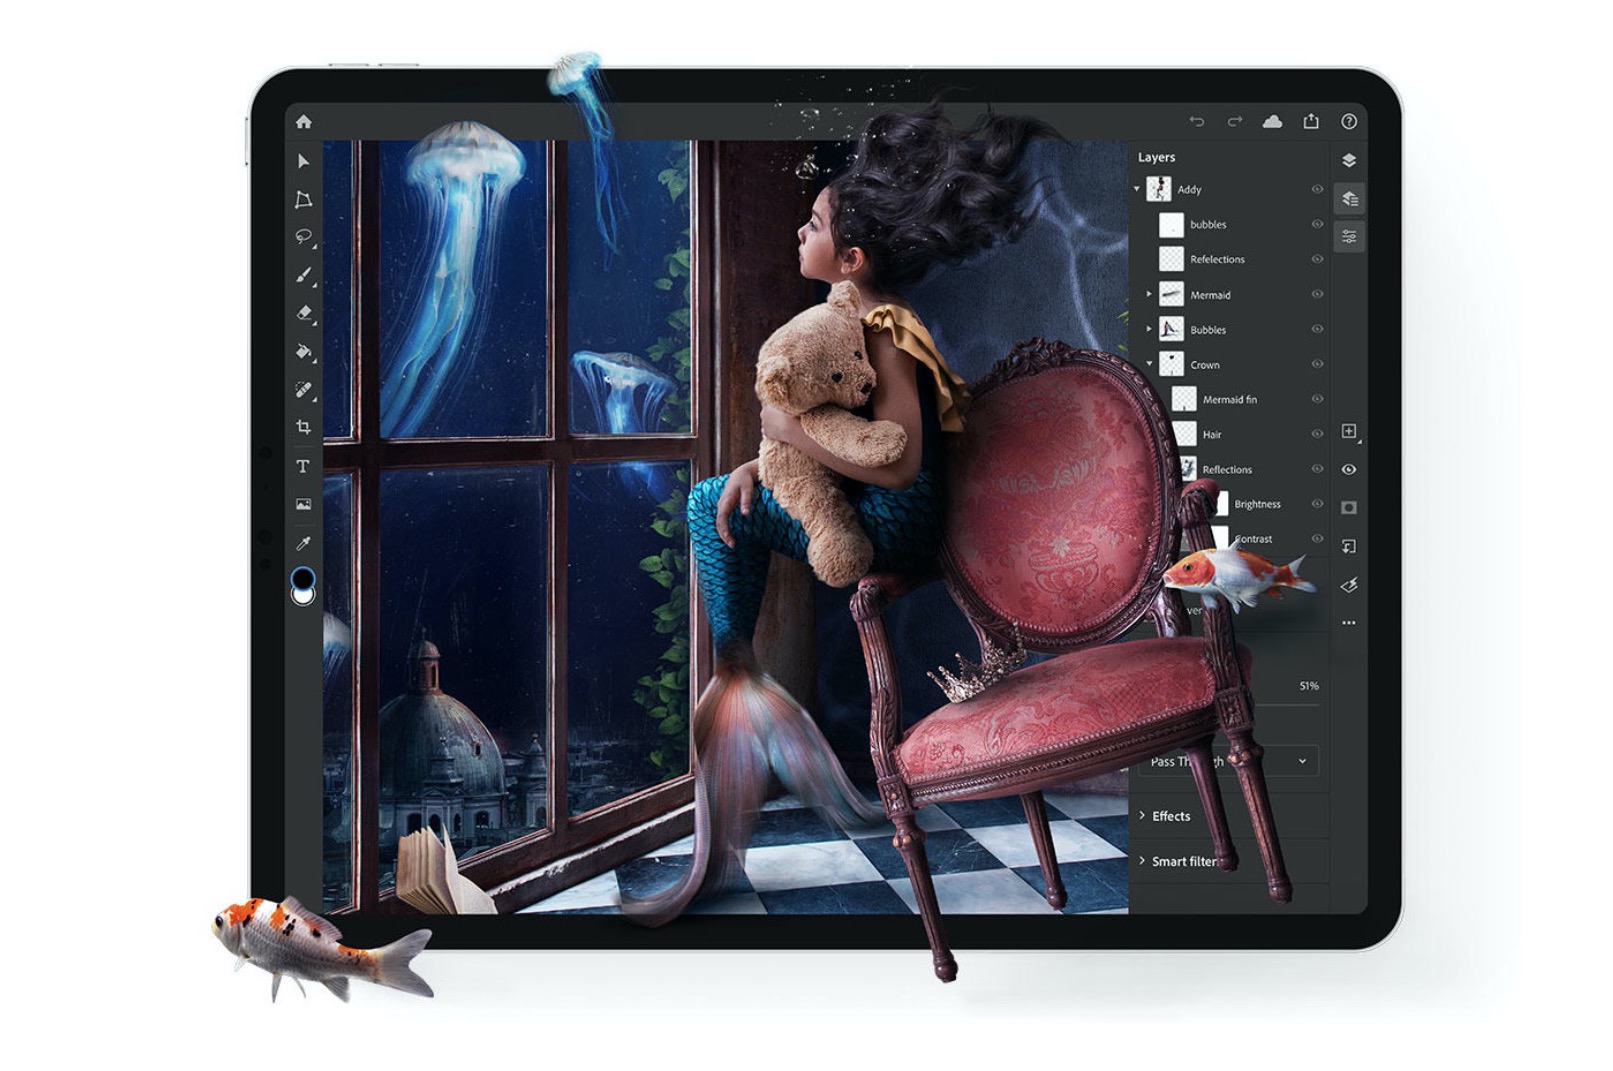 Phần mềm chỉnh sửa ảnh Adobe Photoshop chính thức trên iPadOS